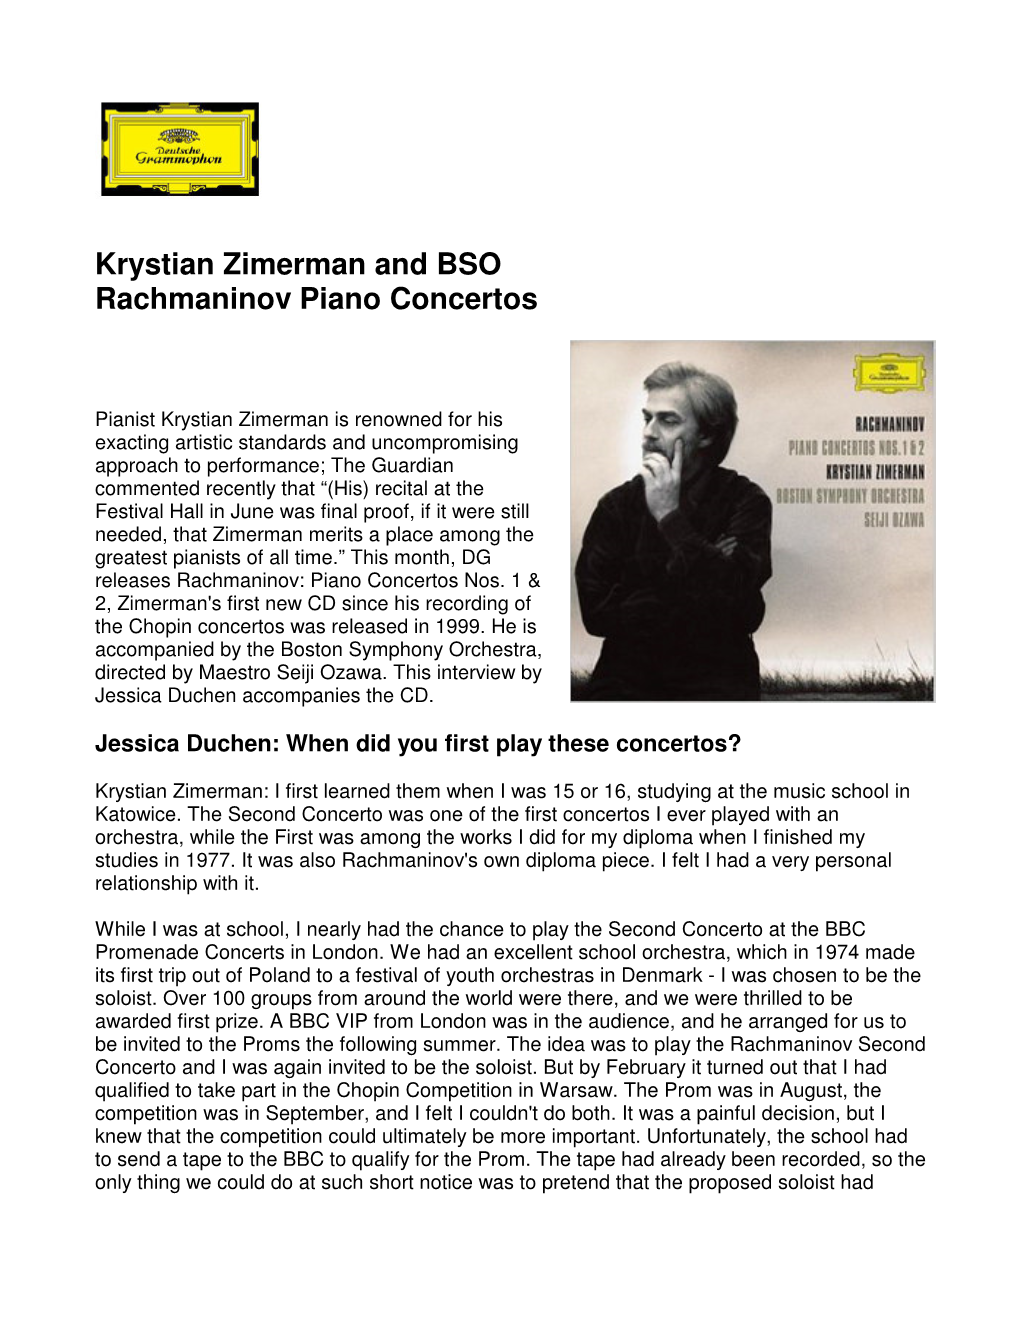 Krystian Zimerman and BSO Rachmaninov Piano Concertos